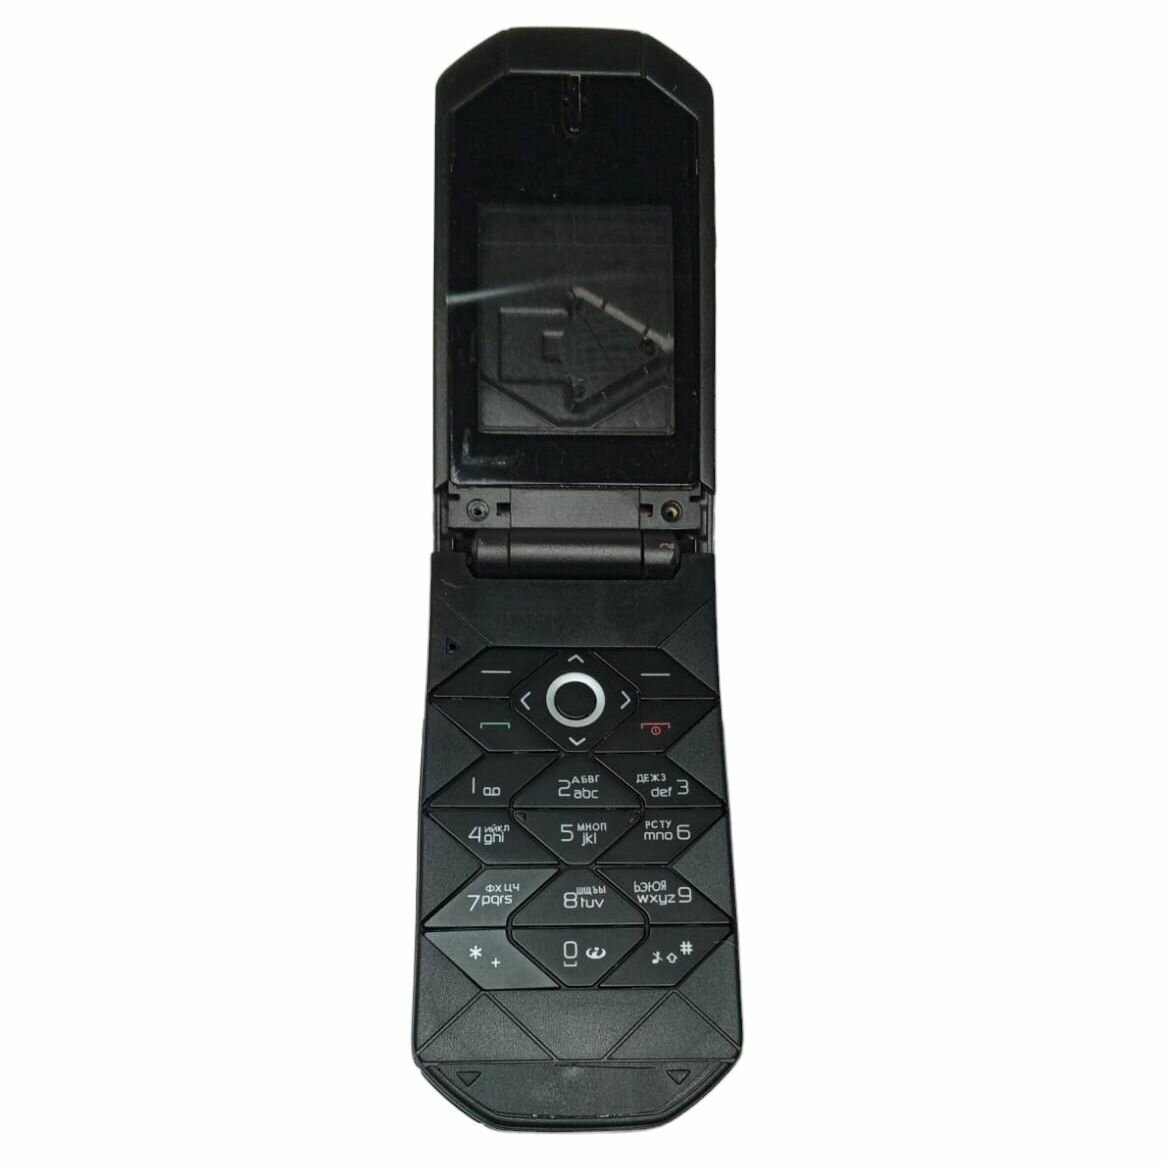 Корпус для Nokia 7070 Prism с клавиатурой (Цвет: черный)